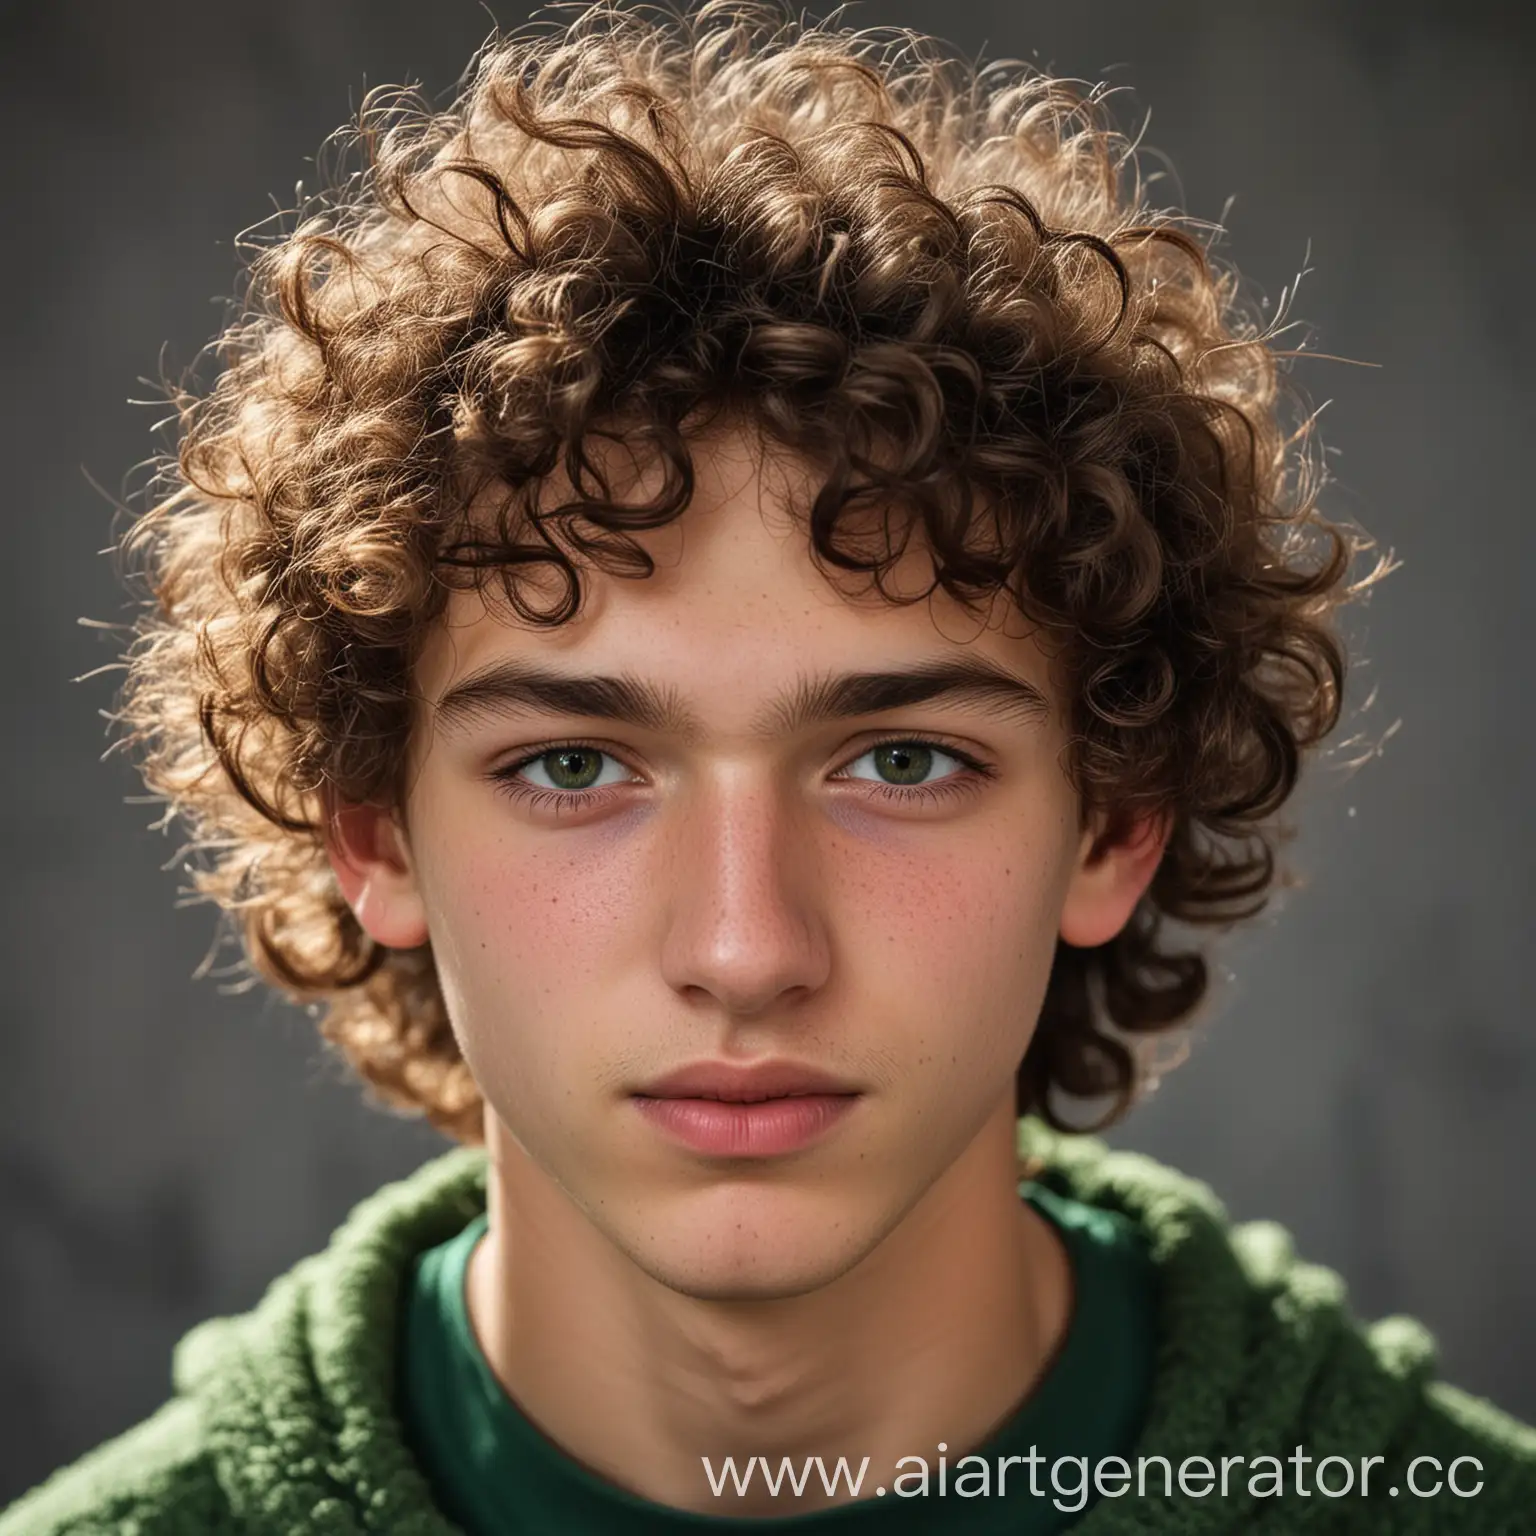 Портрет 18-летнего парня из России, с кудрявыми волосами, средним носом и темно-зеленными глазами.